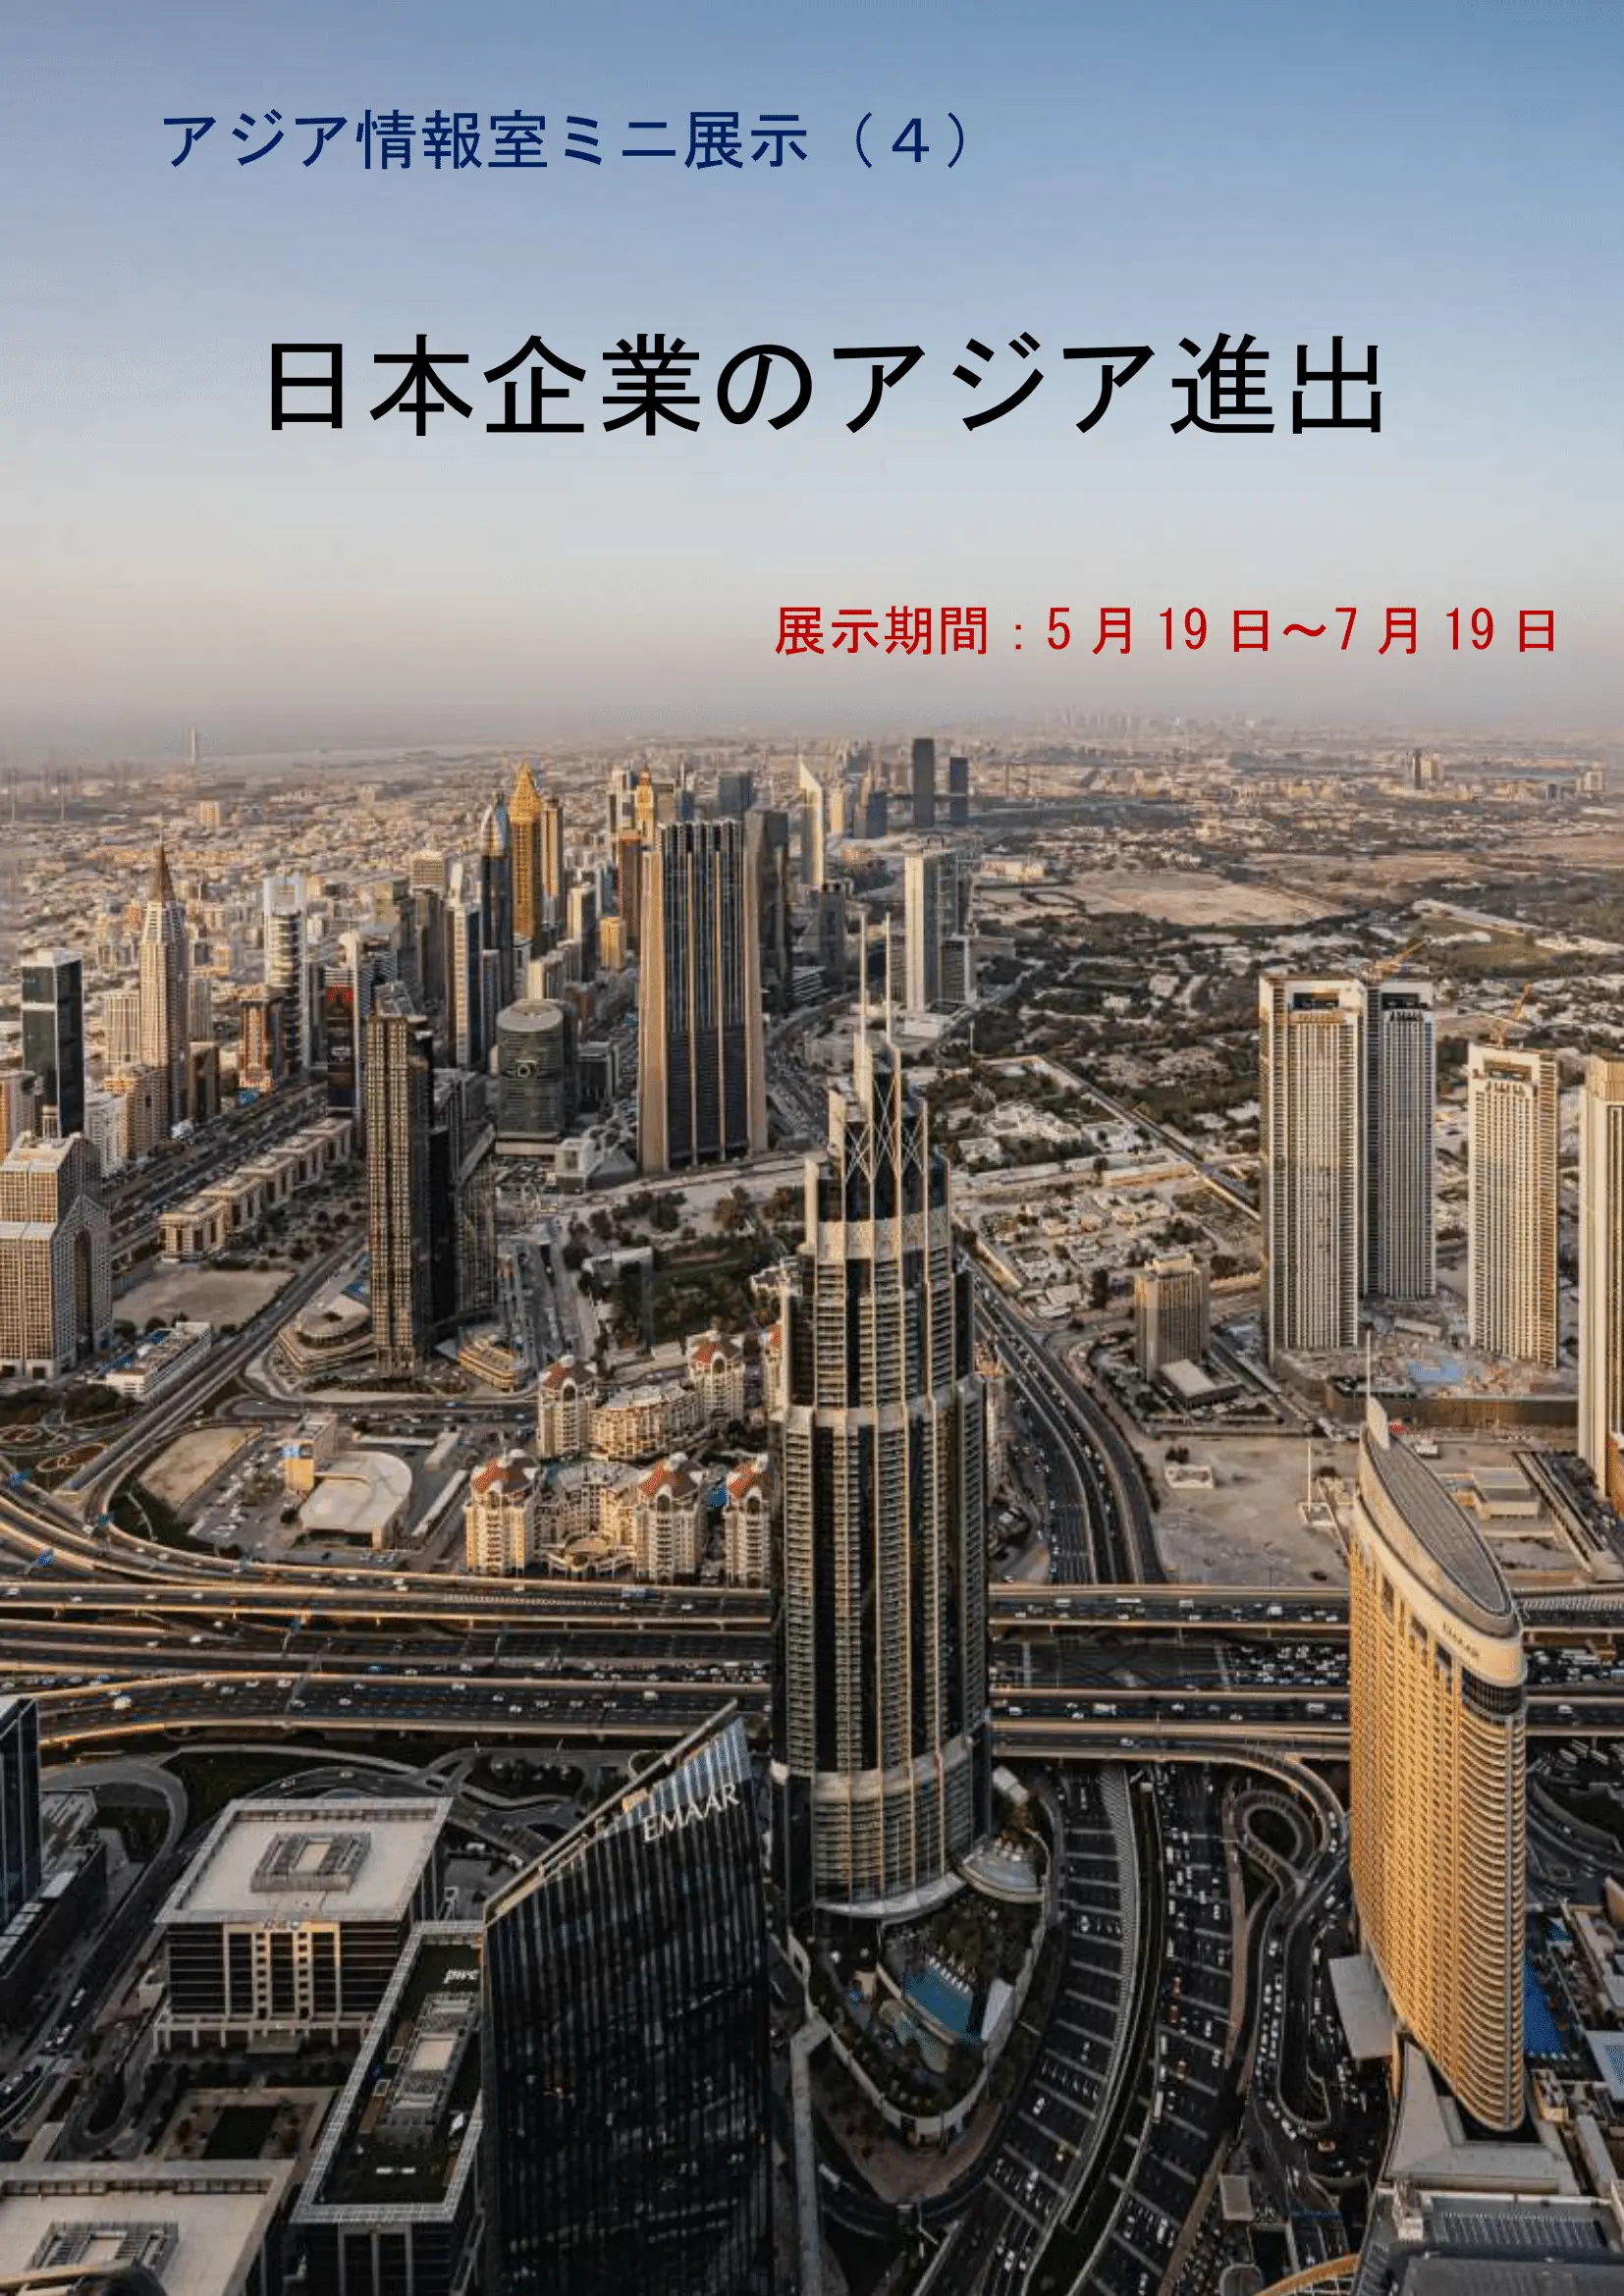 ミニ展示「日本企業のアジア進出」のポスター画像